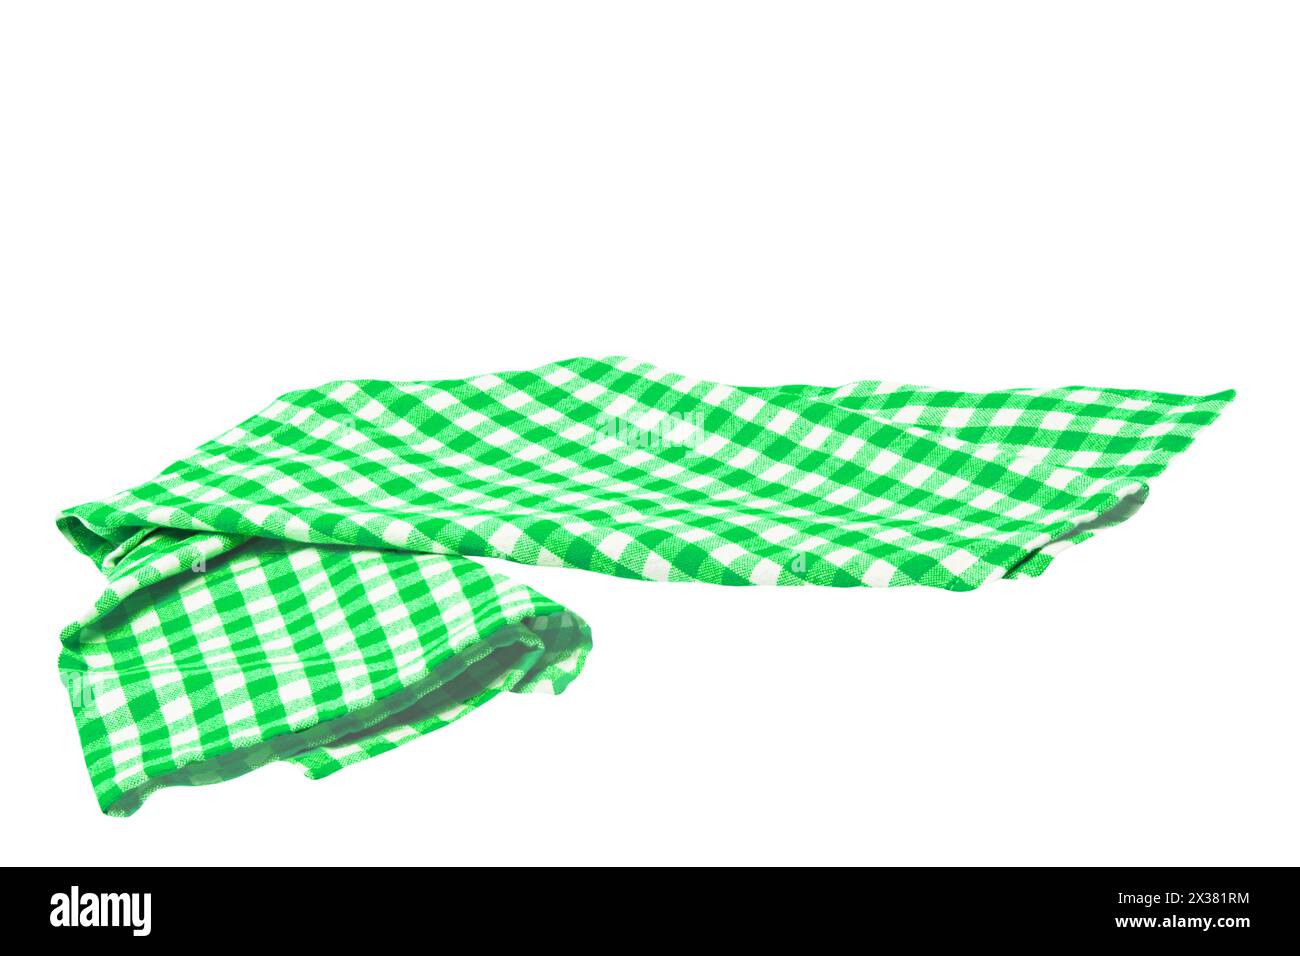 Nahaufnahme einer grün-weiß karierten Serviette oder Tischdecke, isoliert auf weißem Hintergrund. Beschneidungspfad. Küchenzubehör. Draufsicht. Stockfoto